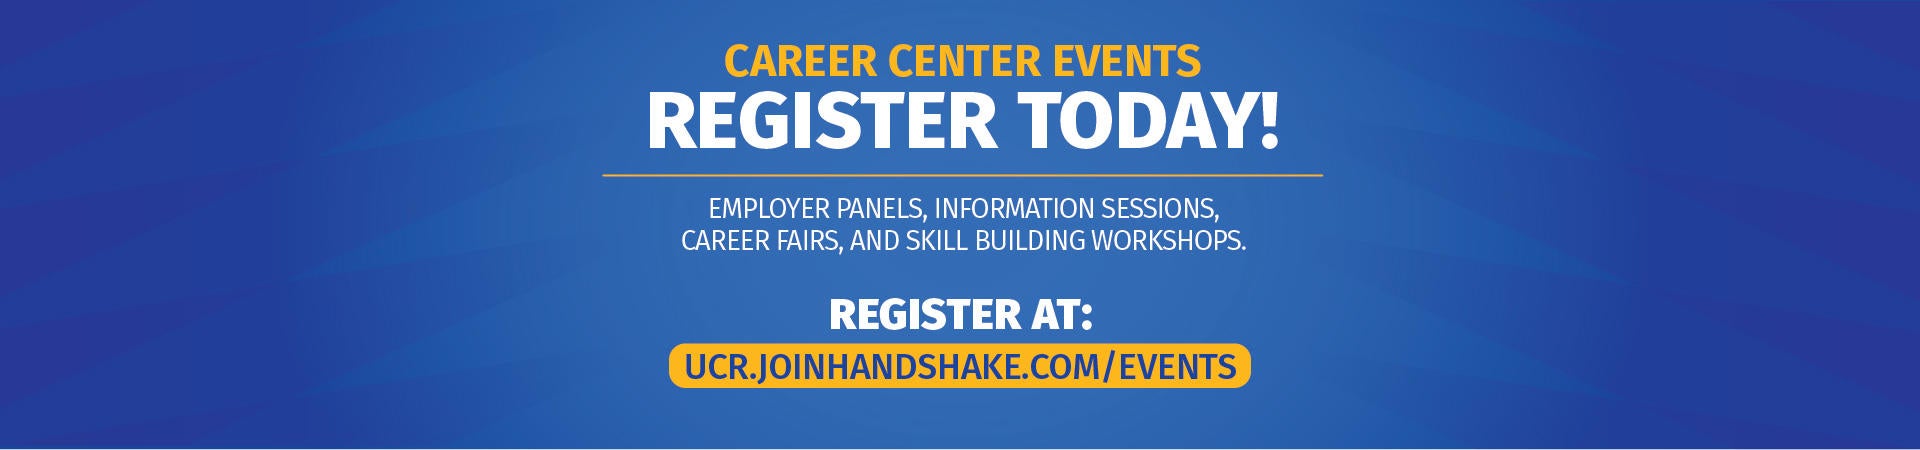 Register for Career Center Events at ucr.handshake.com/events